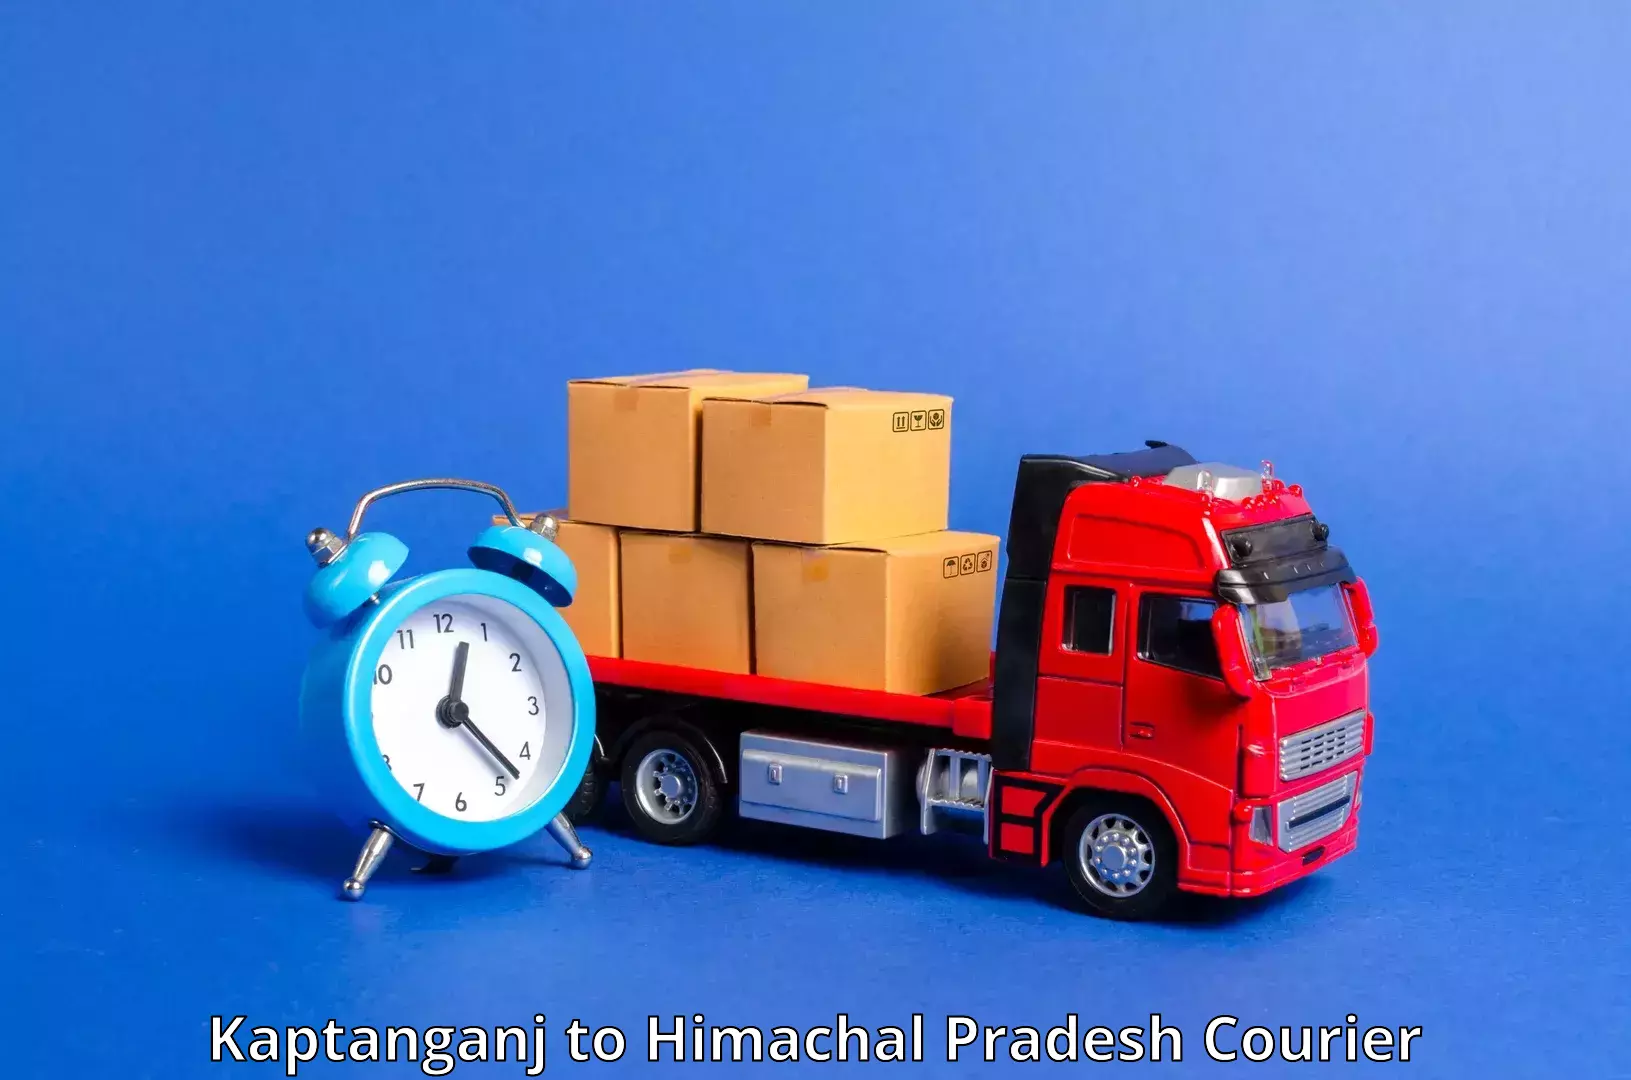 Personal parcel delivery Kaptanganj to Sundar Nagar